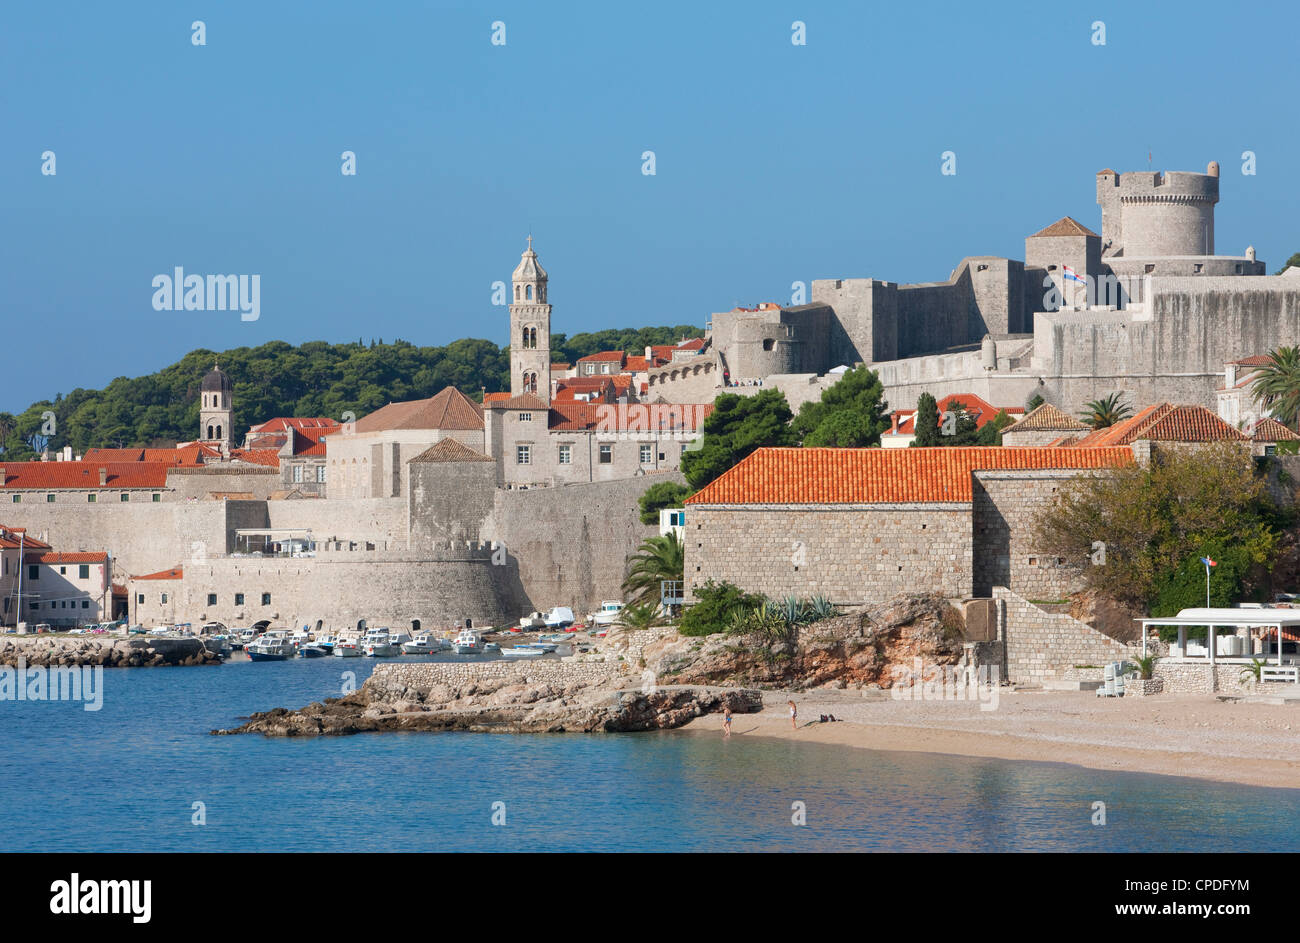 Plage de la ville et vue sur la vieille ville, site du patrimoine mondial de l'UNESCO, Dubrovnik, Croatie, Europe Banque D'Images